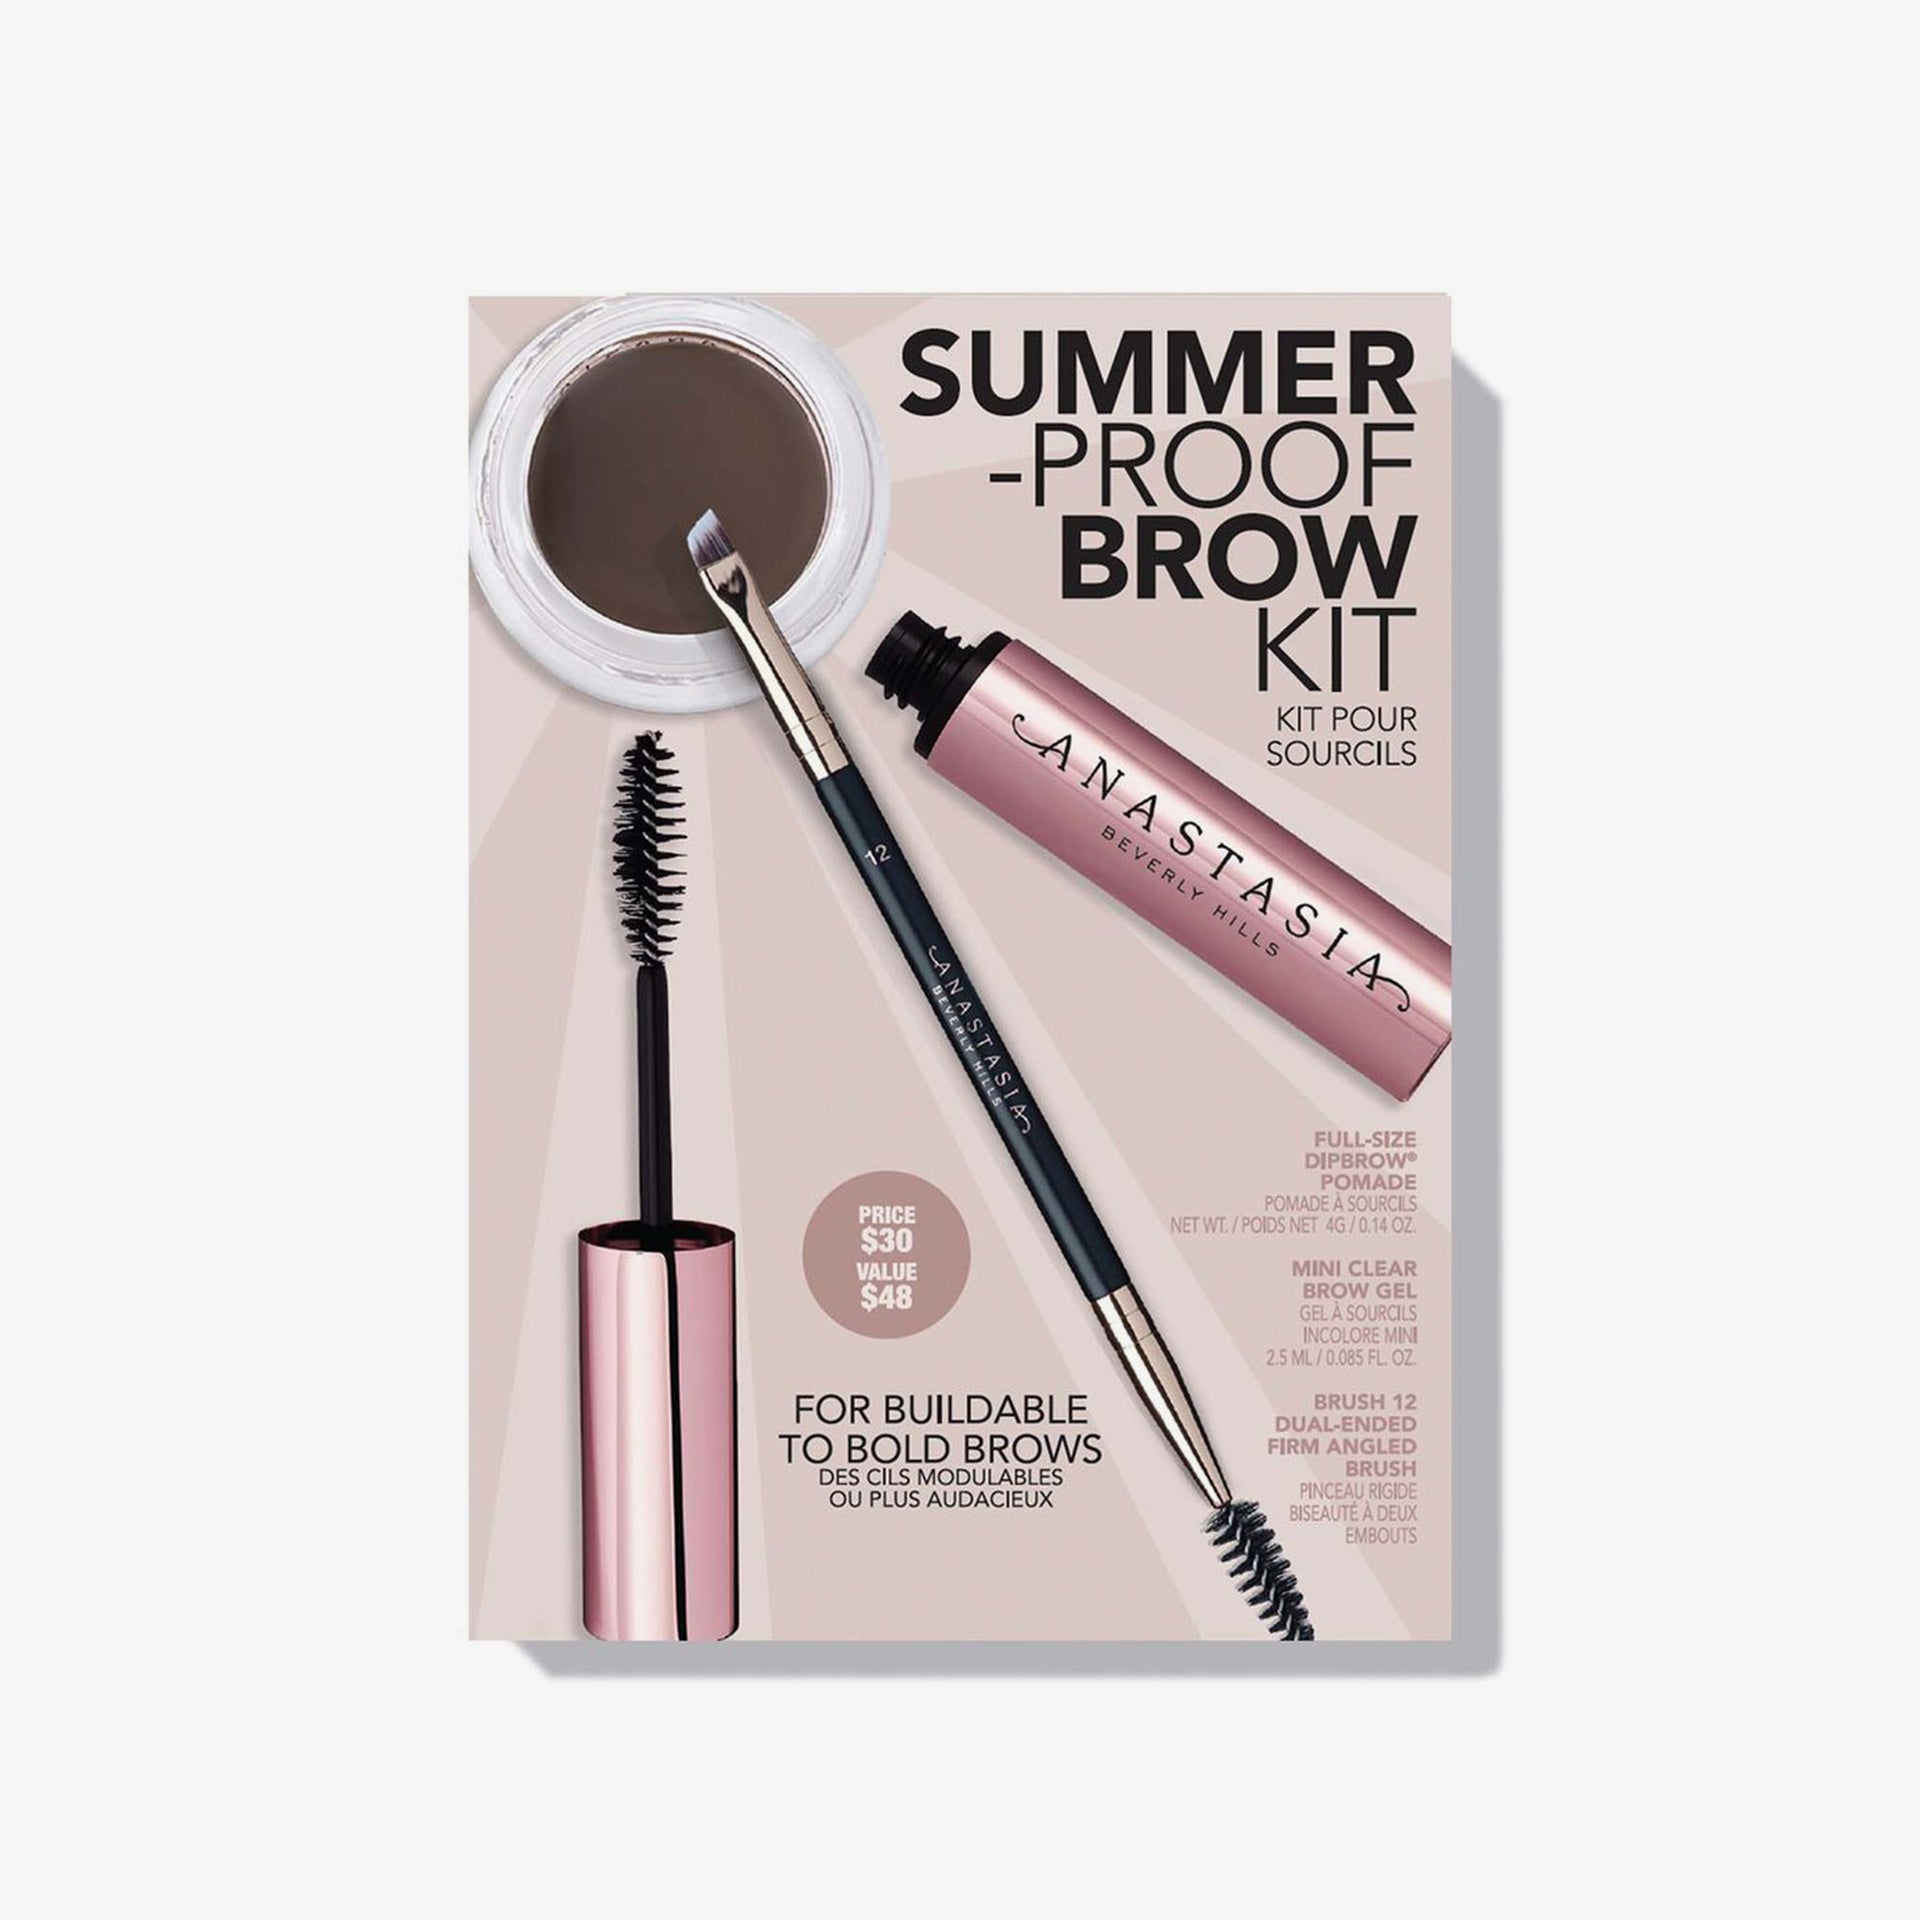 Medium Brown |Summer-Proof Brow Kit - Medium Brown